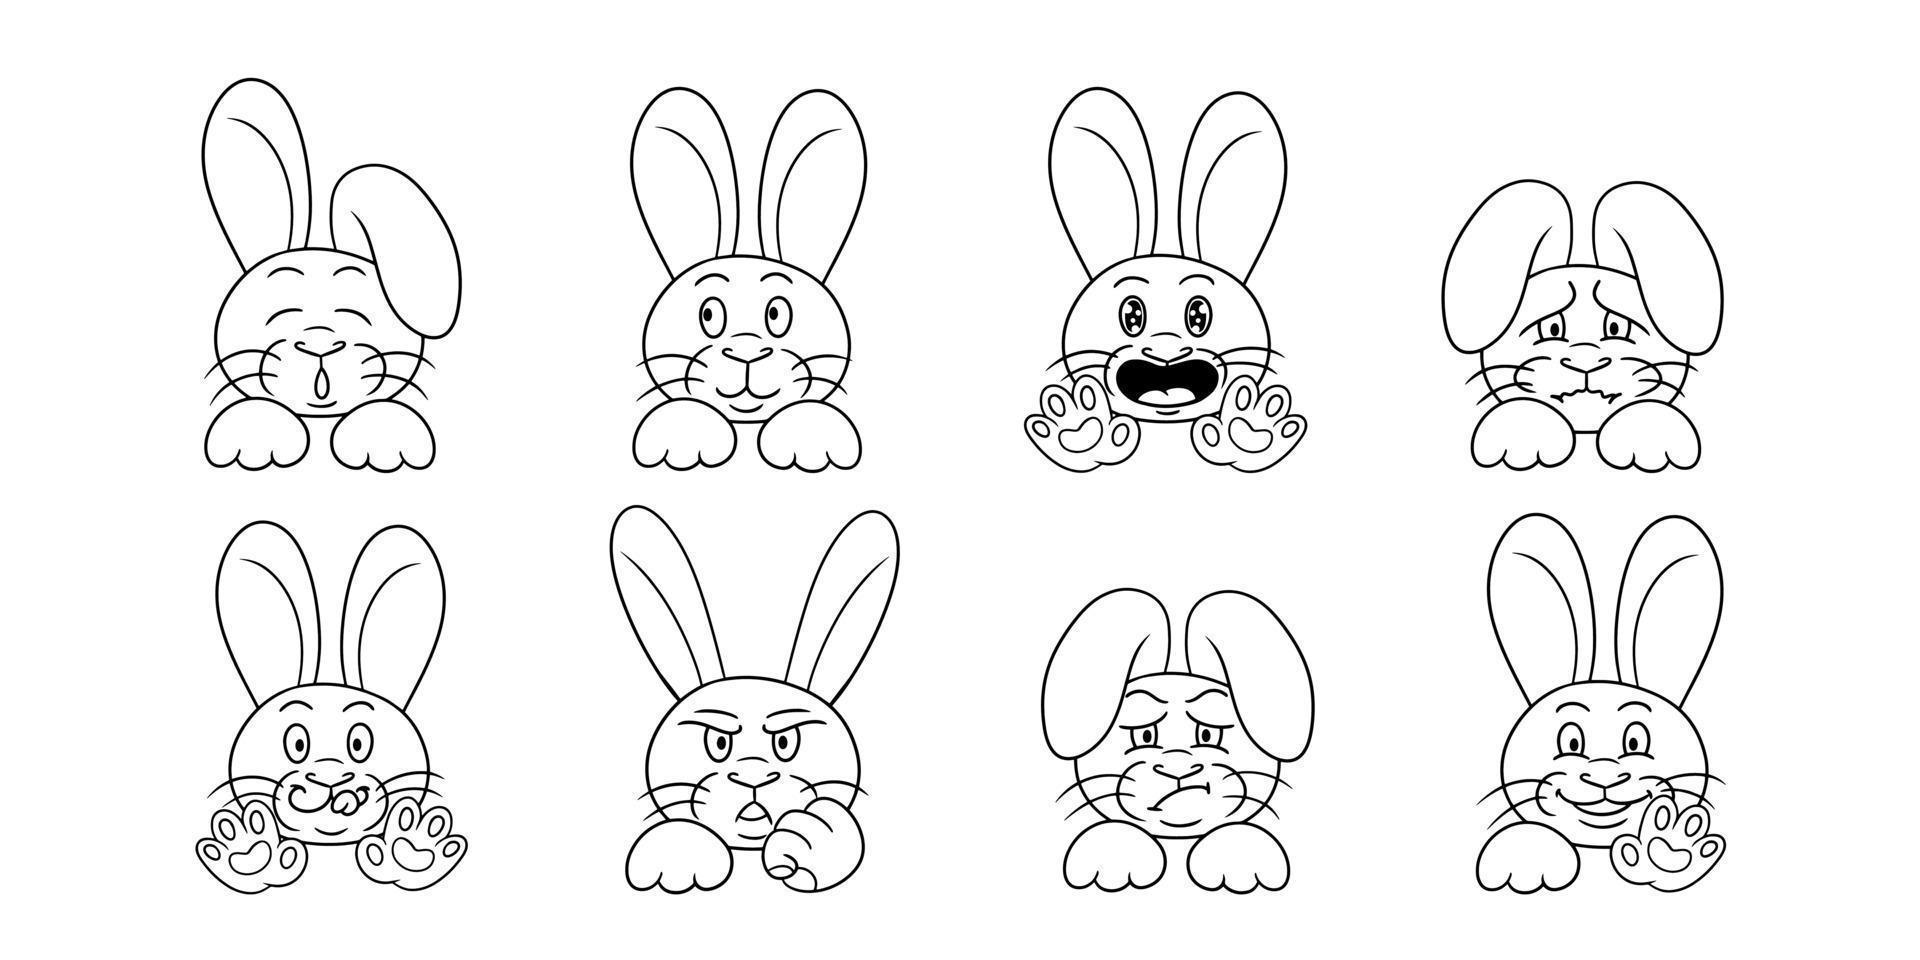 große Sammlung einfarbiger Charaktere, niedliche kleine Kaninchen im Cartoon-Stil, Vektorillustration auf weißem Hintergrund vektor